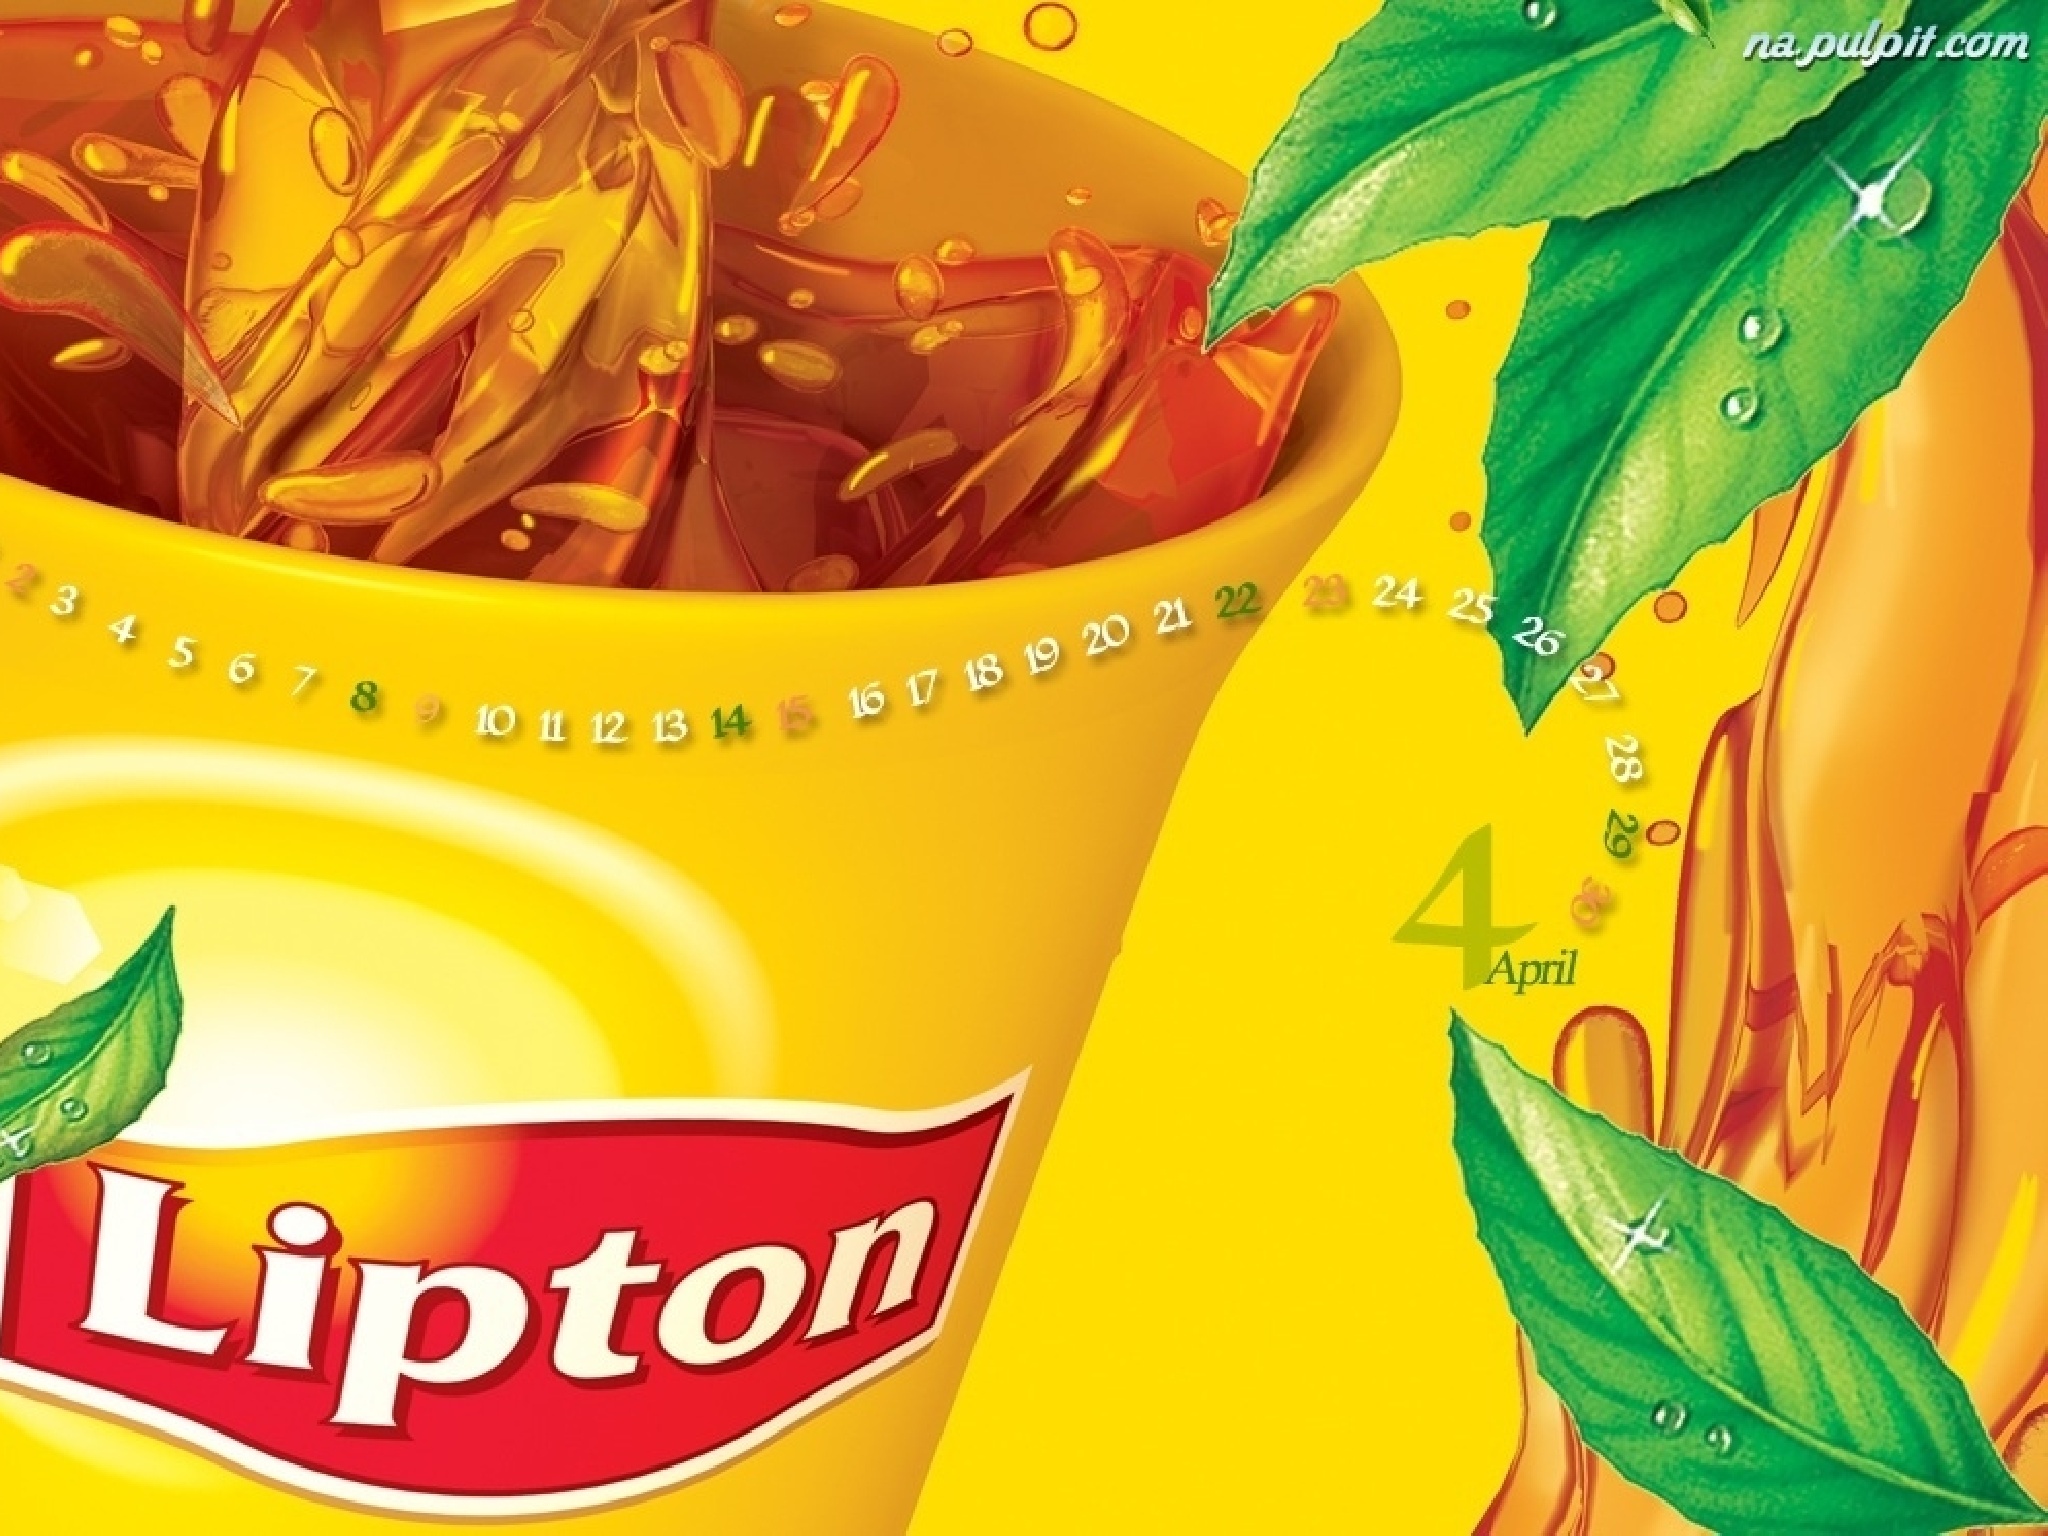 Top 5 Tea Brands in India- Lipton